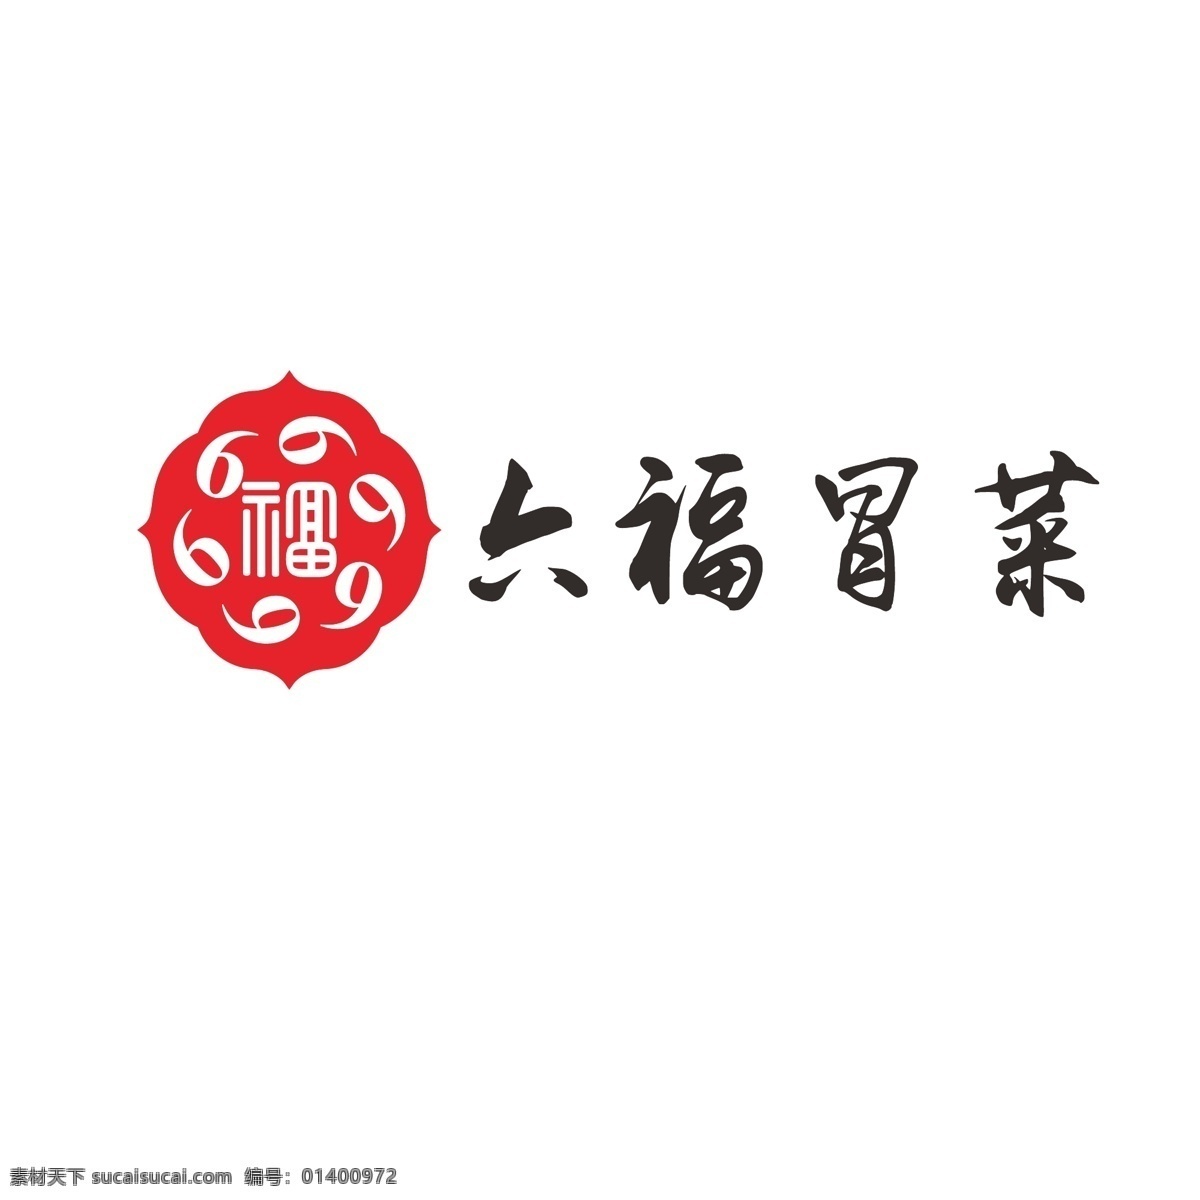 菜馆 商标 logo 火锅 川菜 冒菜 火热 福字 数字6 66大顺